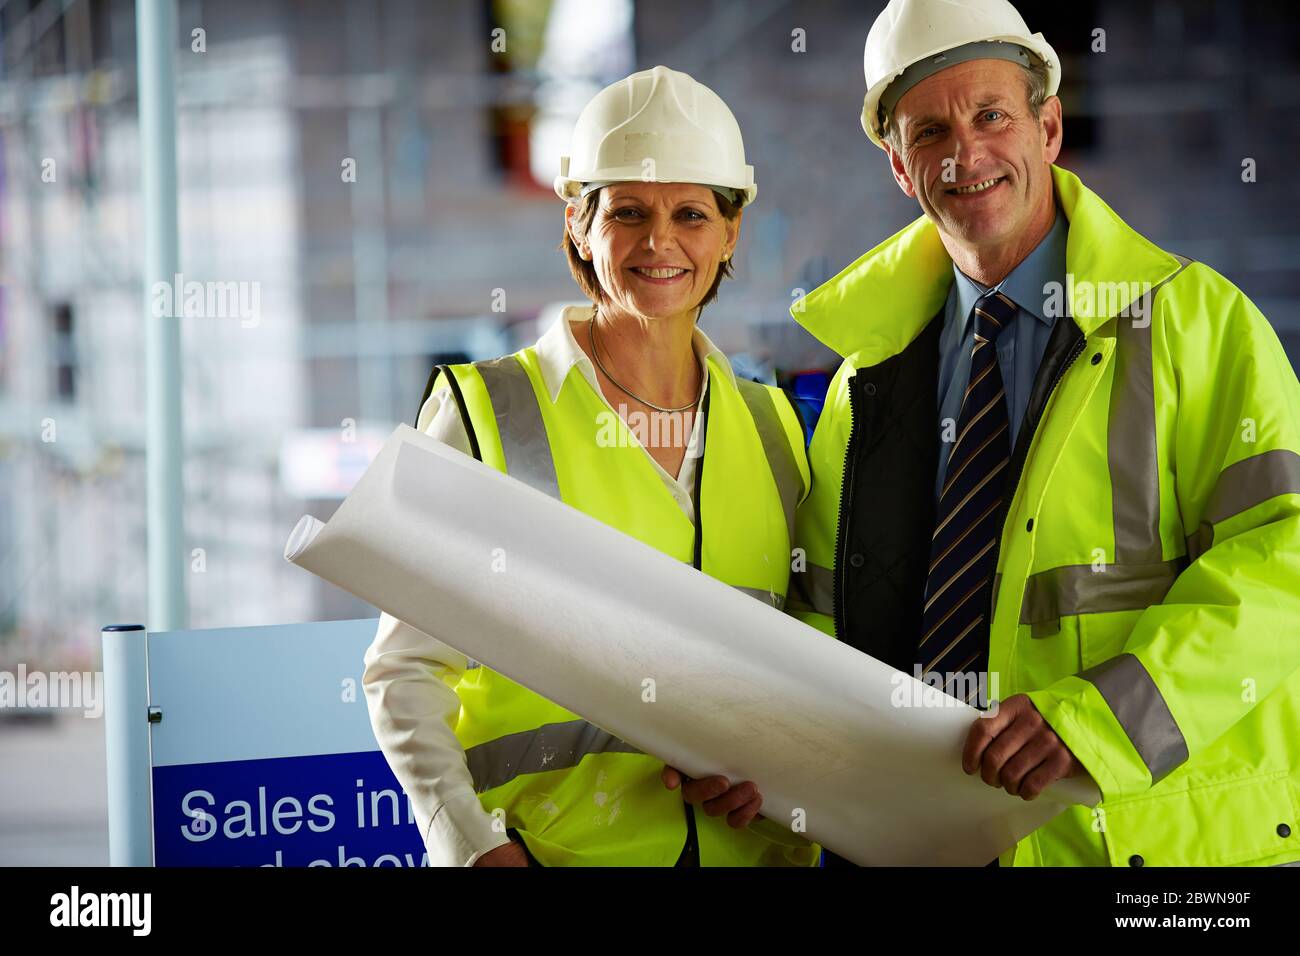 Porträt von zwei reifen Architekten in Schutzkleidung auf der Baustelle Blick auf Kamera hält eine Blaupause Stockfoto